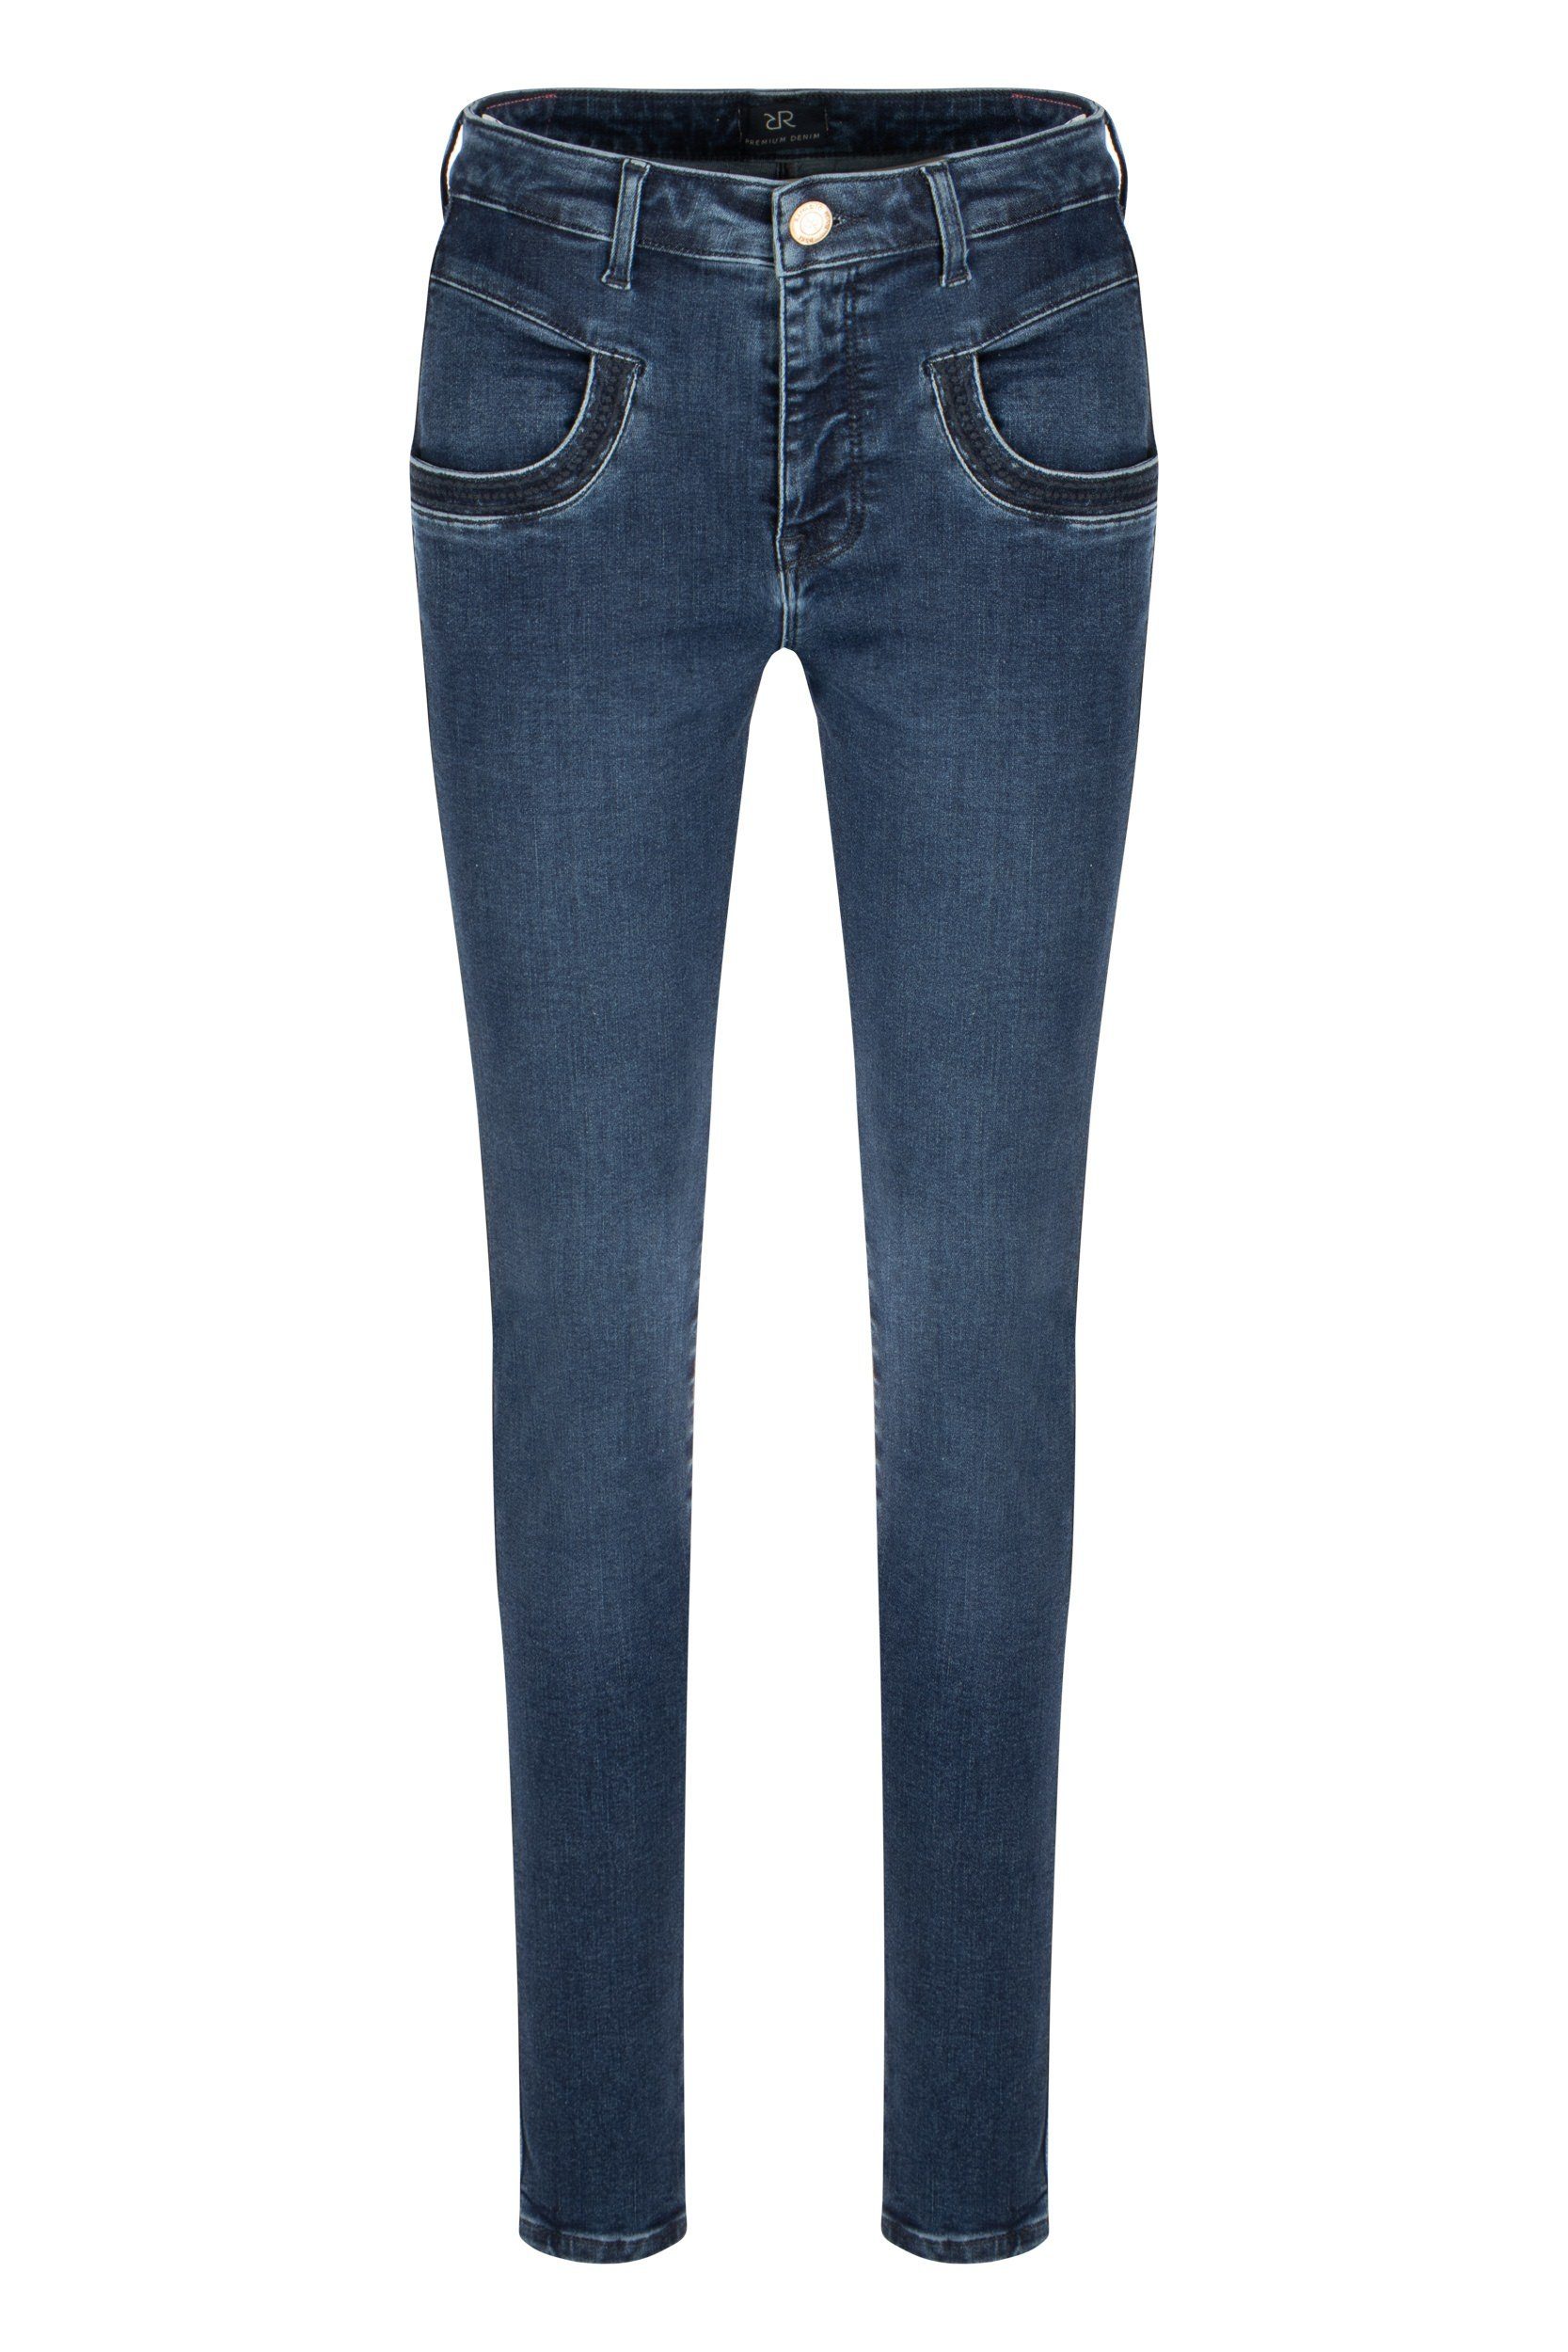 Raffaello Jeans Deco 5-Pocket-Jeans Rossi Asra